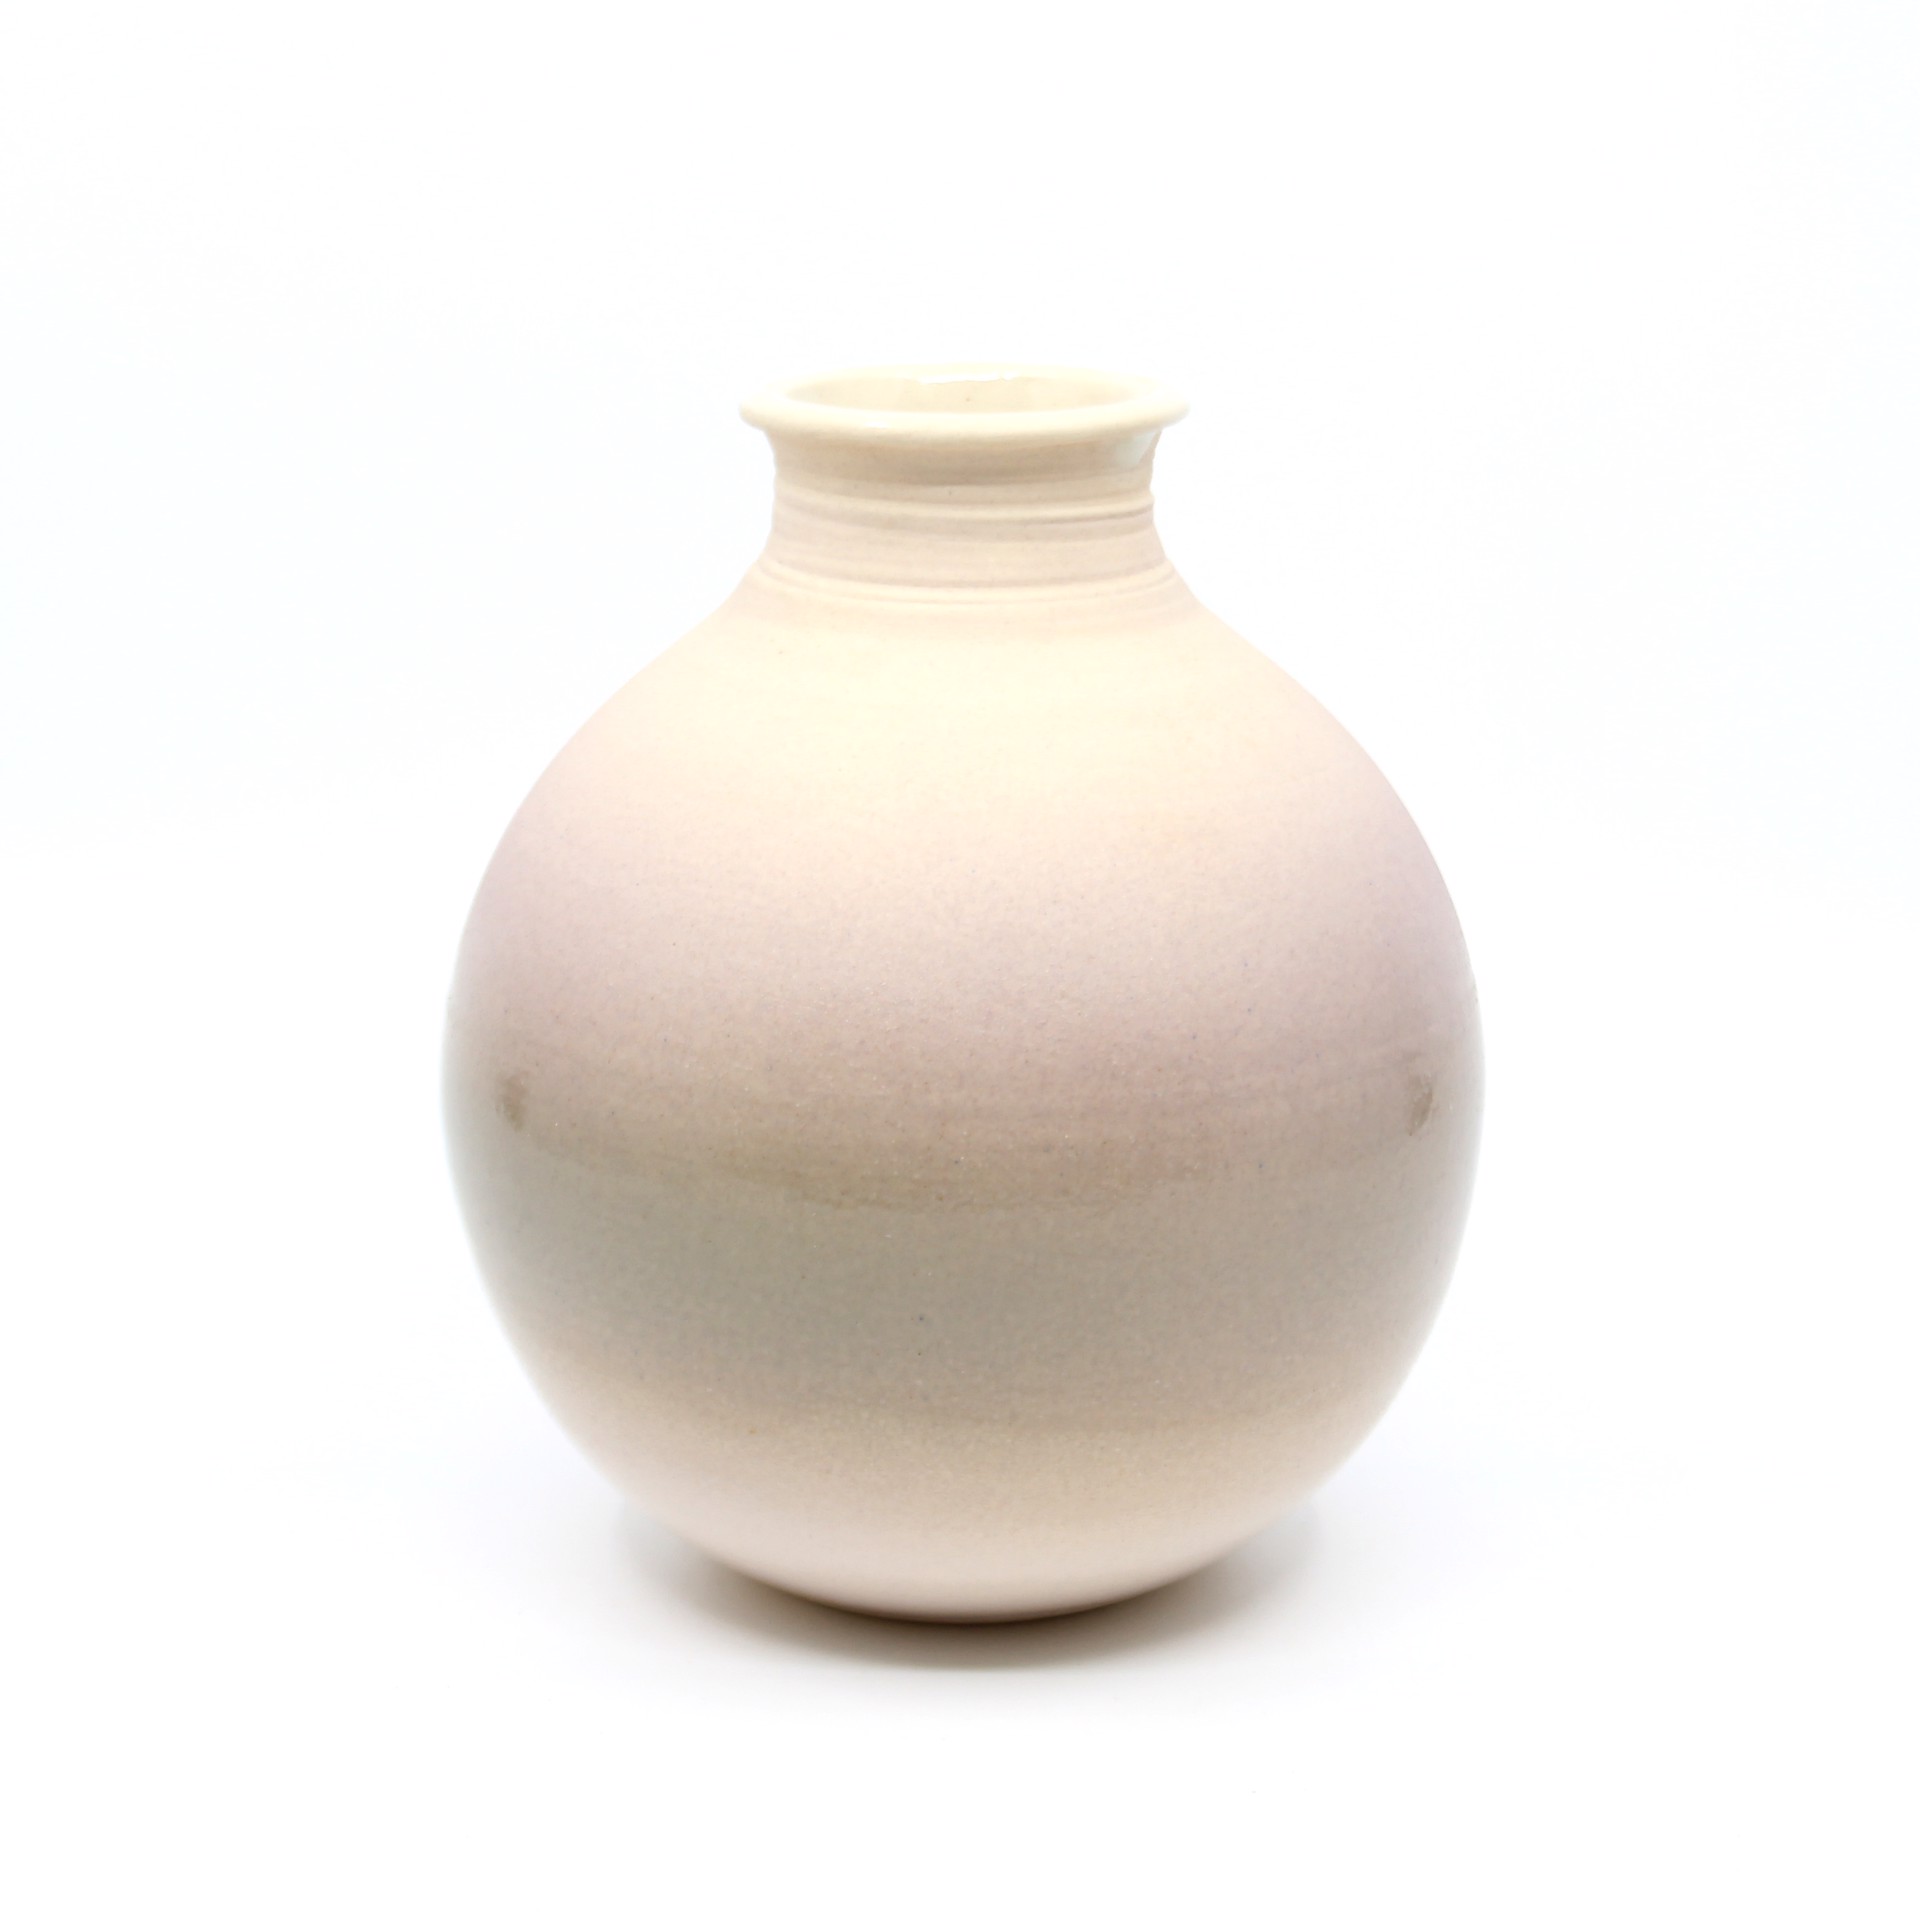 Vase 3 by Heather Bradley